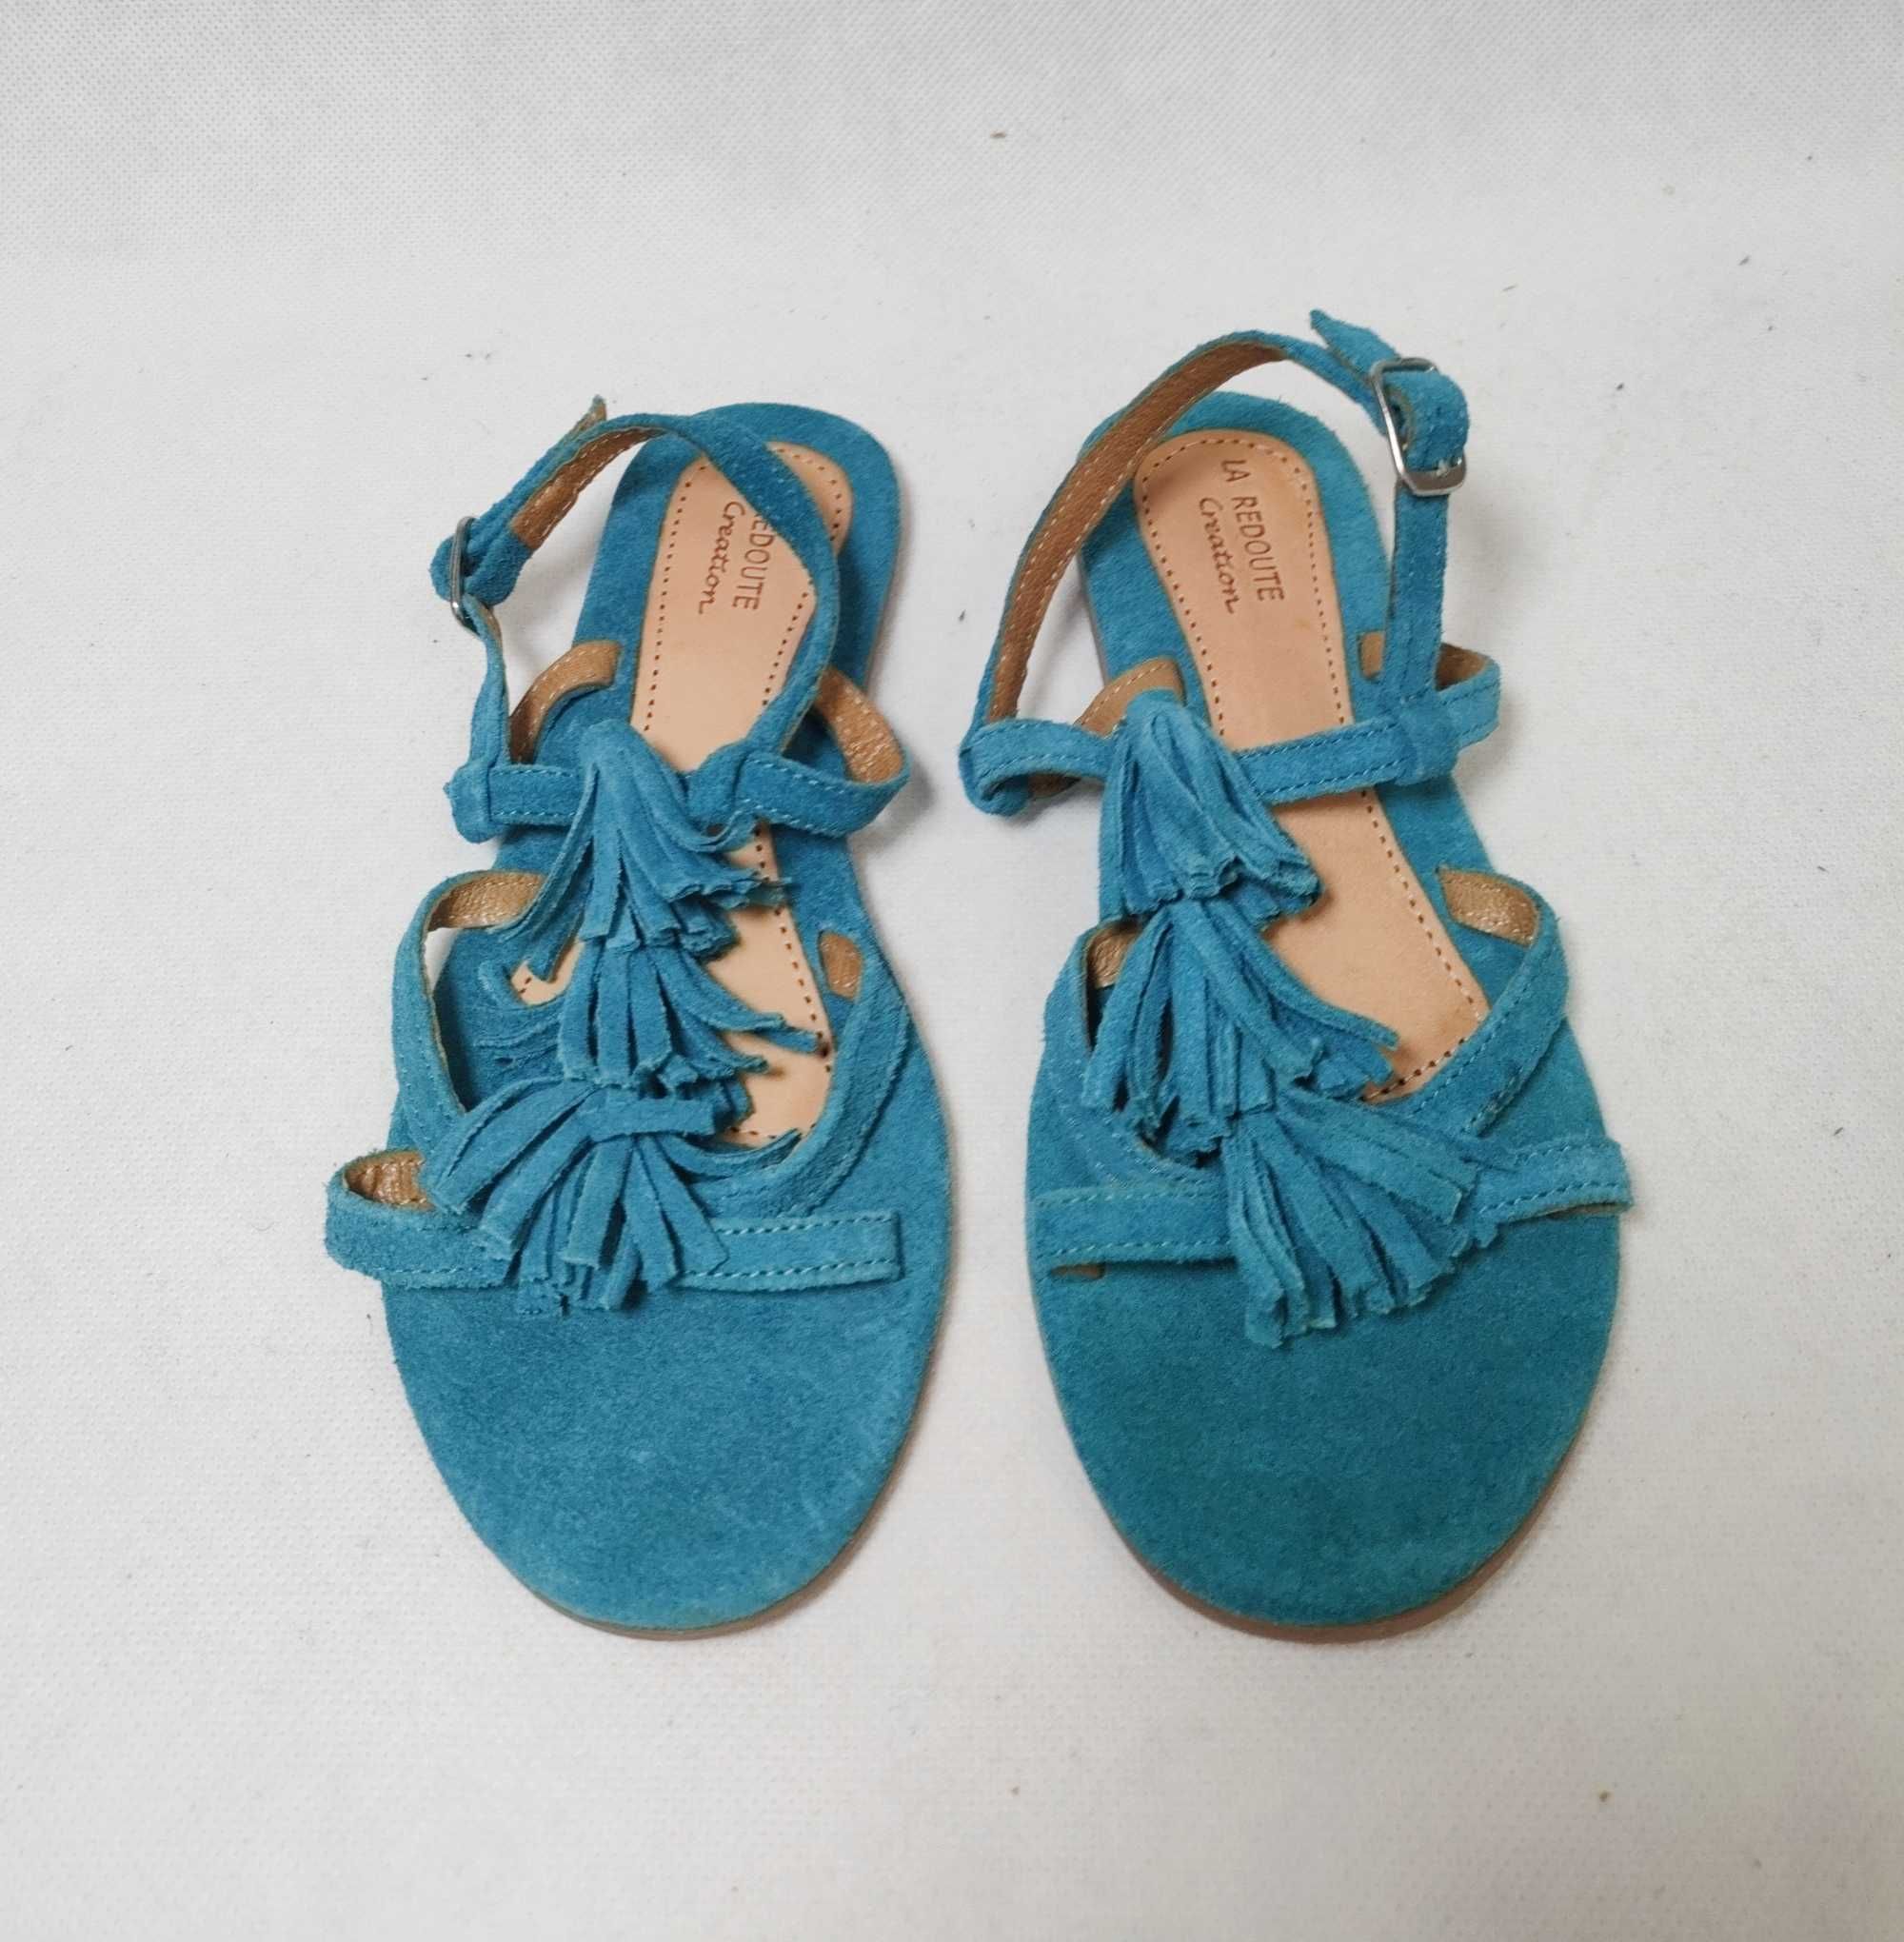 Sandały sandałki skórzane zamszowe dla dziewczynki LR 32 19,5cm